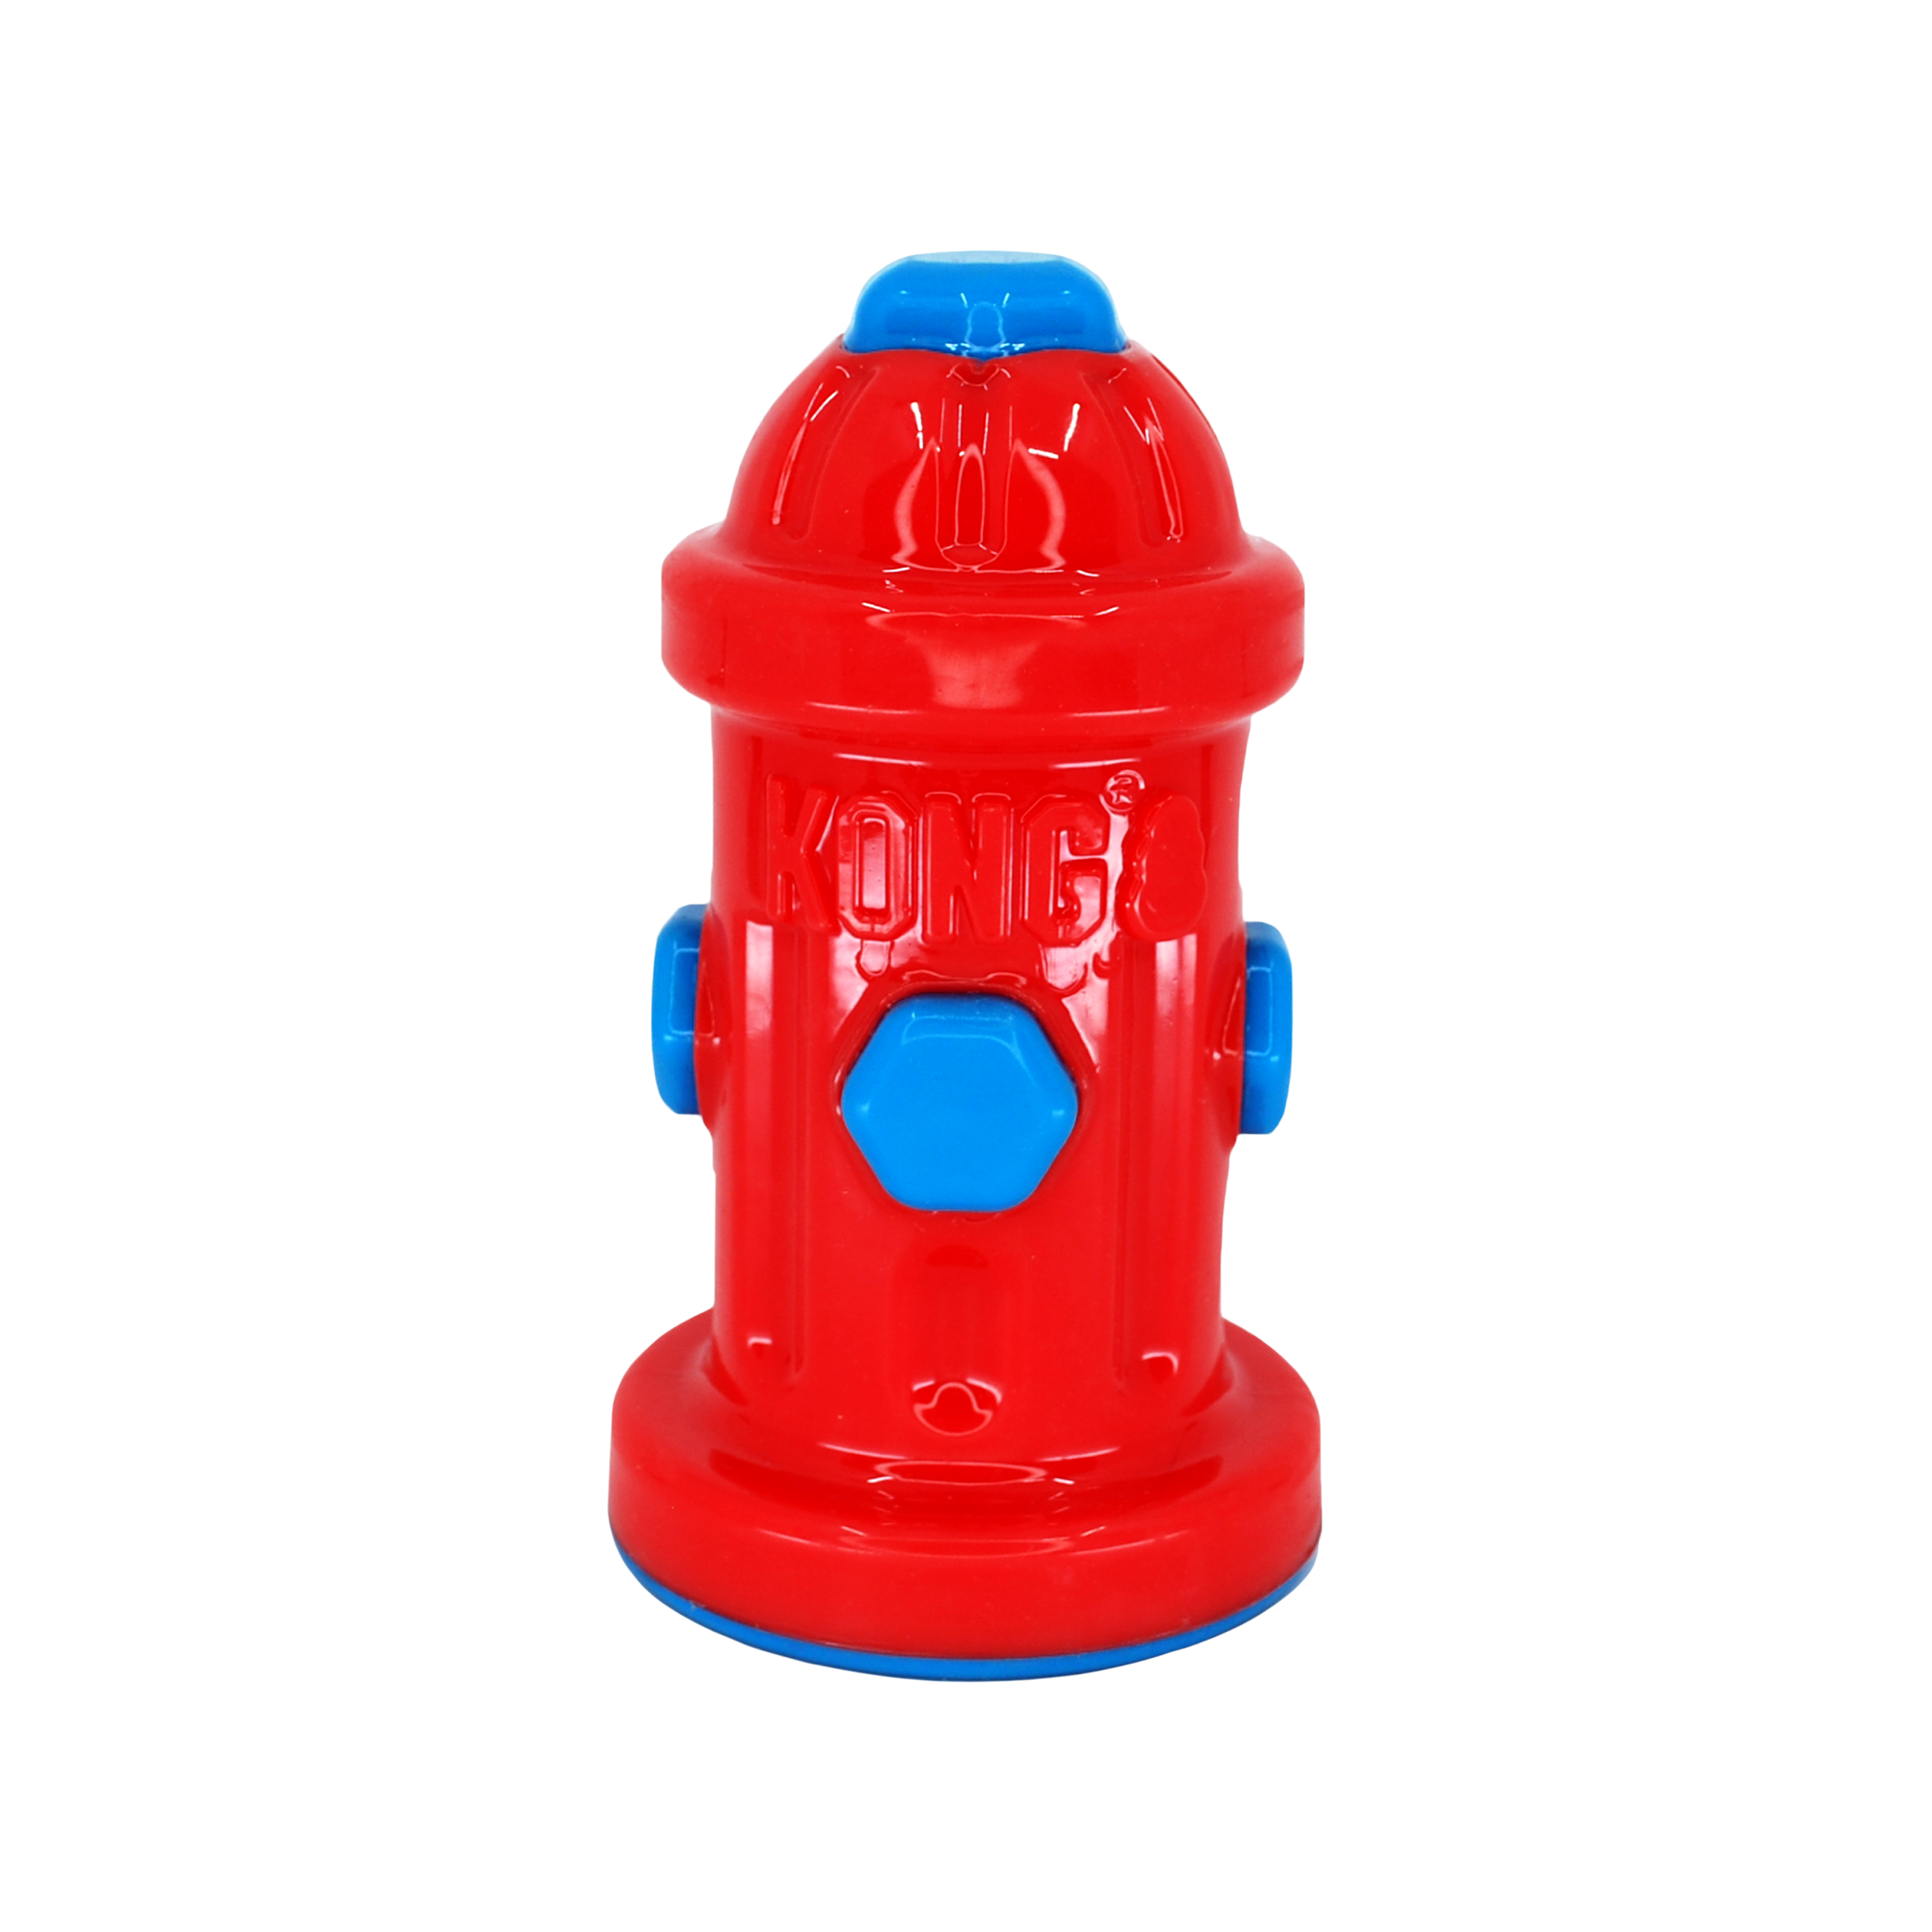 Imagem do produto Eon Fire Hydrant fora da embalagem